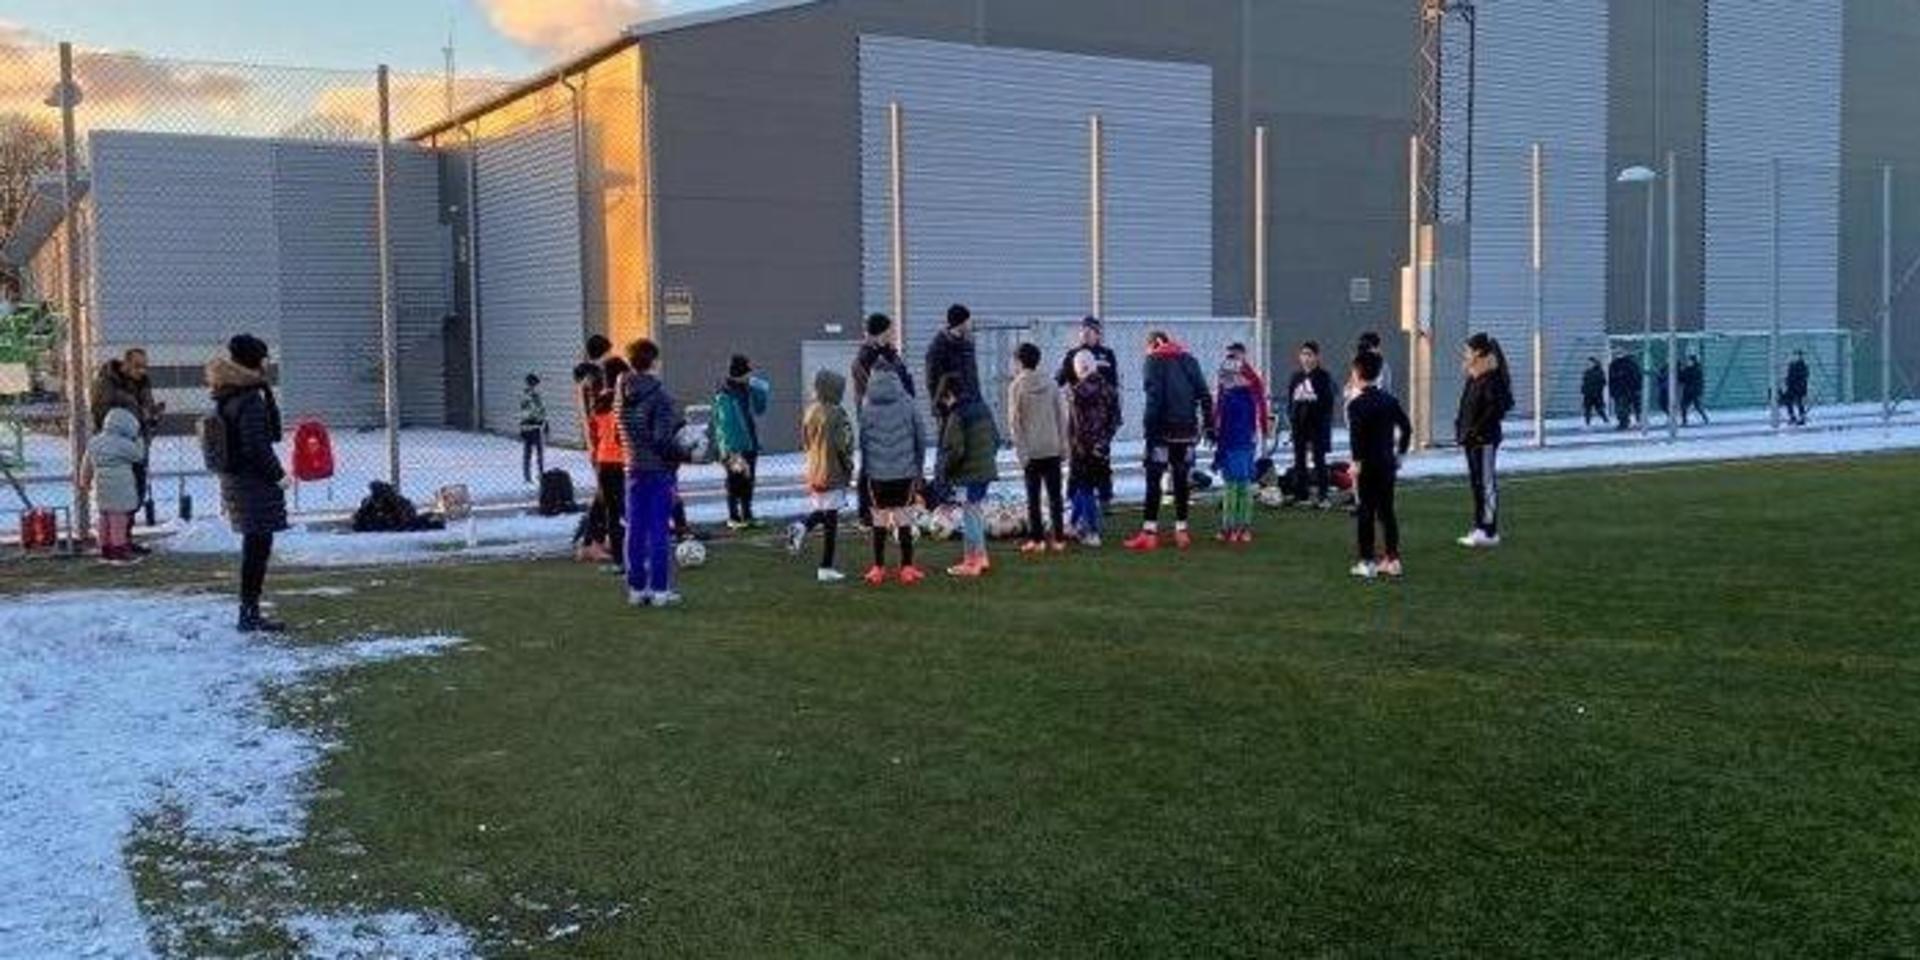 Prova på-fotboll på söndagar är IF Leikin och Alets IK:s gemensamma initiativ för ungdomar som vill testa på att spela fotboll. 